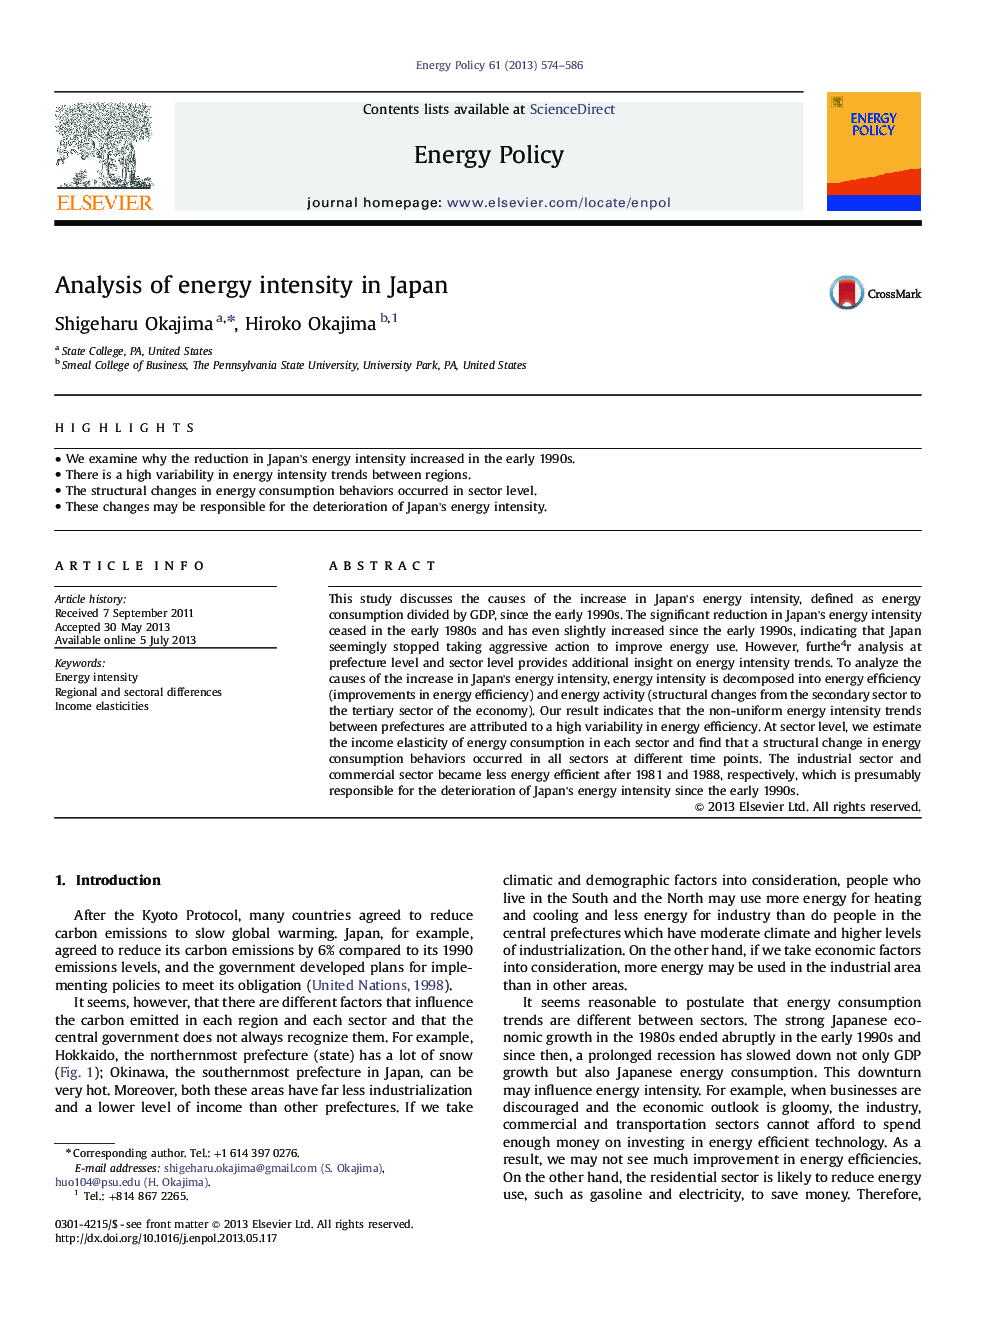 Analysis of energy intensity in Japan